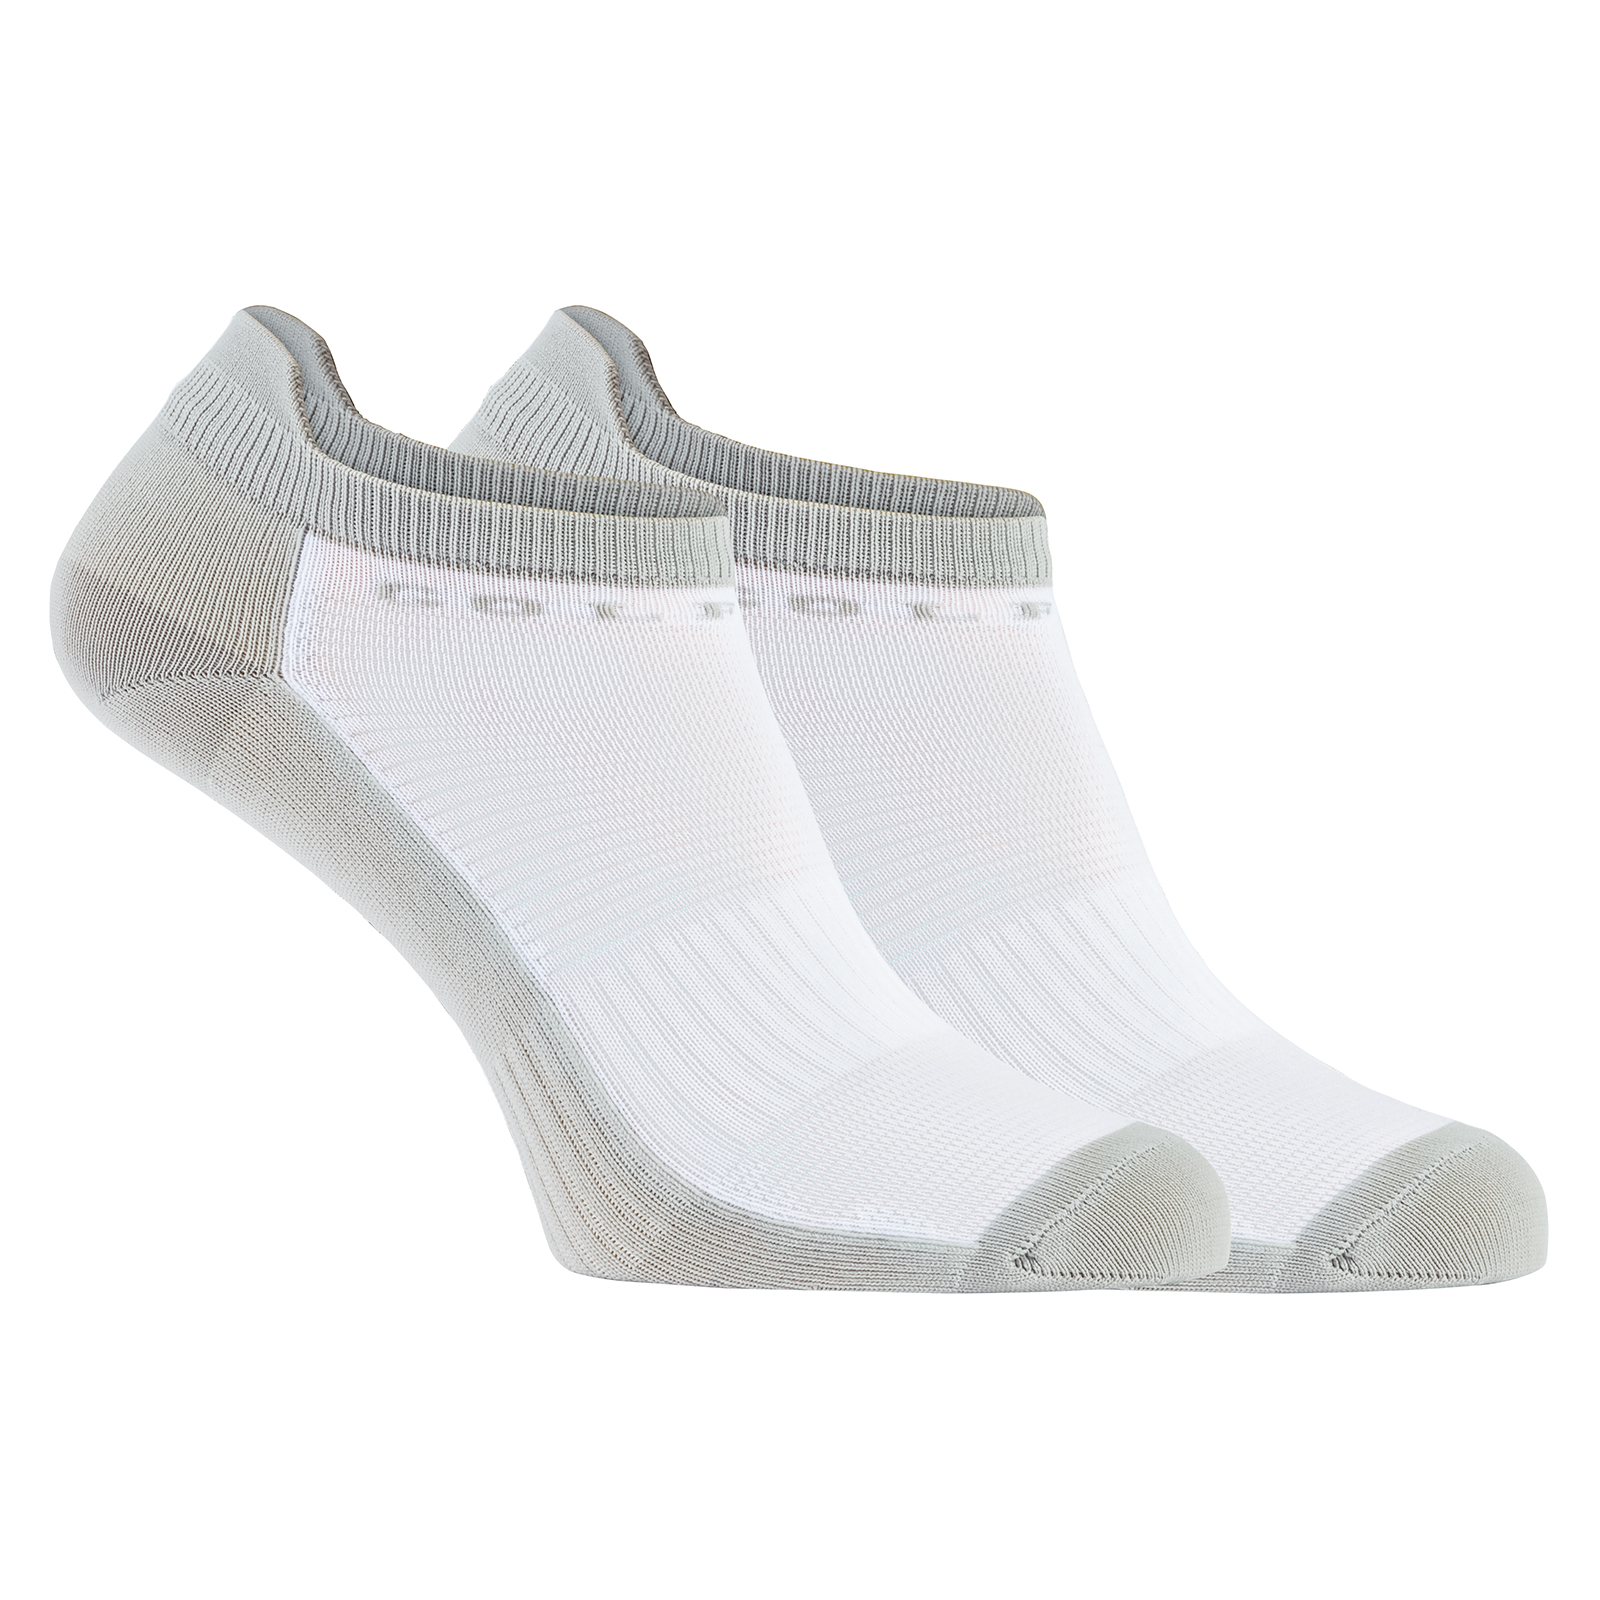 Ladies' thermal golf socks in moisture-regulating material